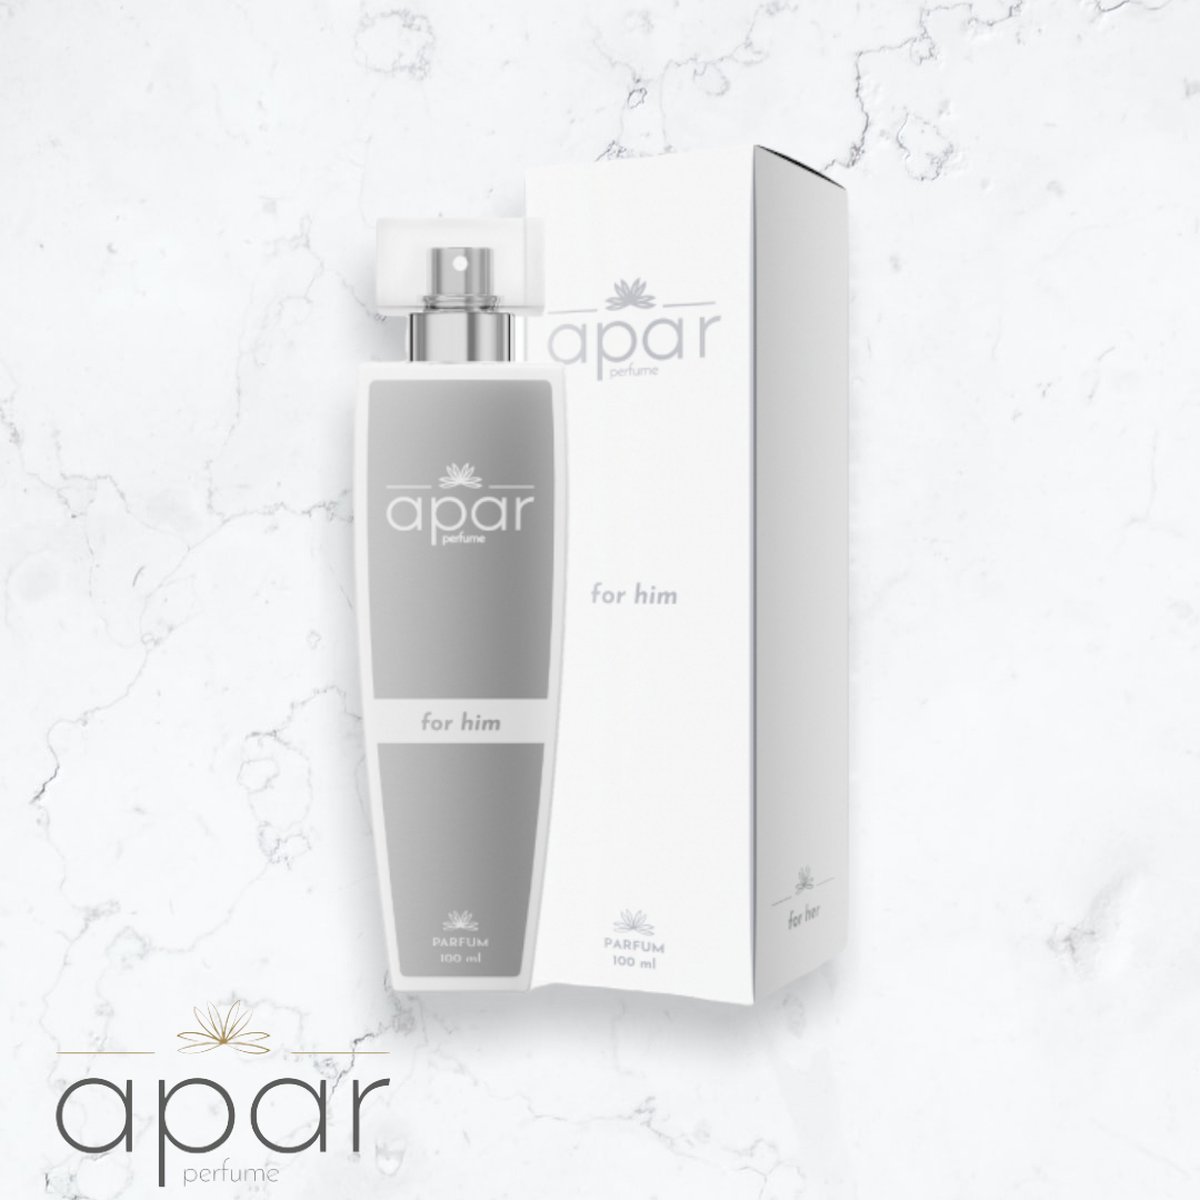 ❤Dure merk geuren voor een eerlijke prijs❤APAR Parfum EDP - 50ml - Nummer H727 Premium -